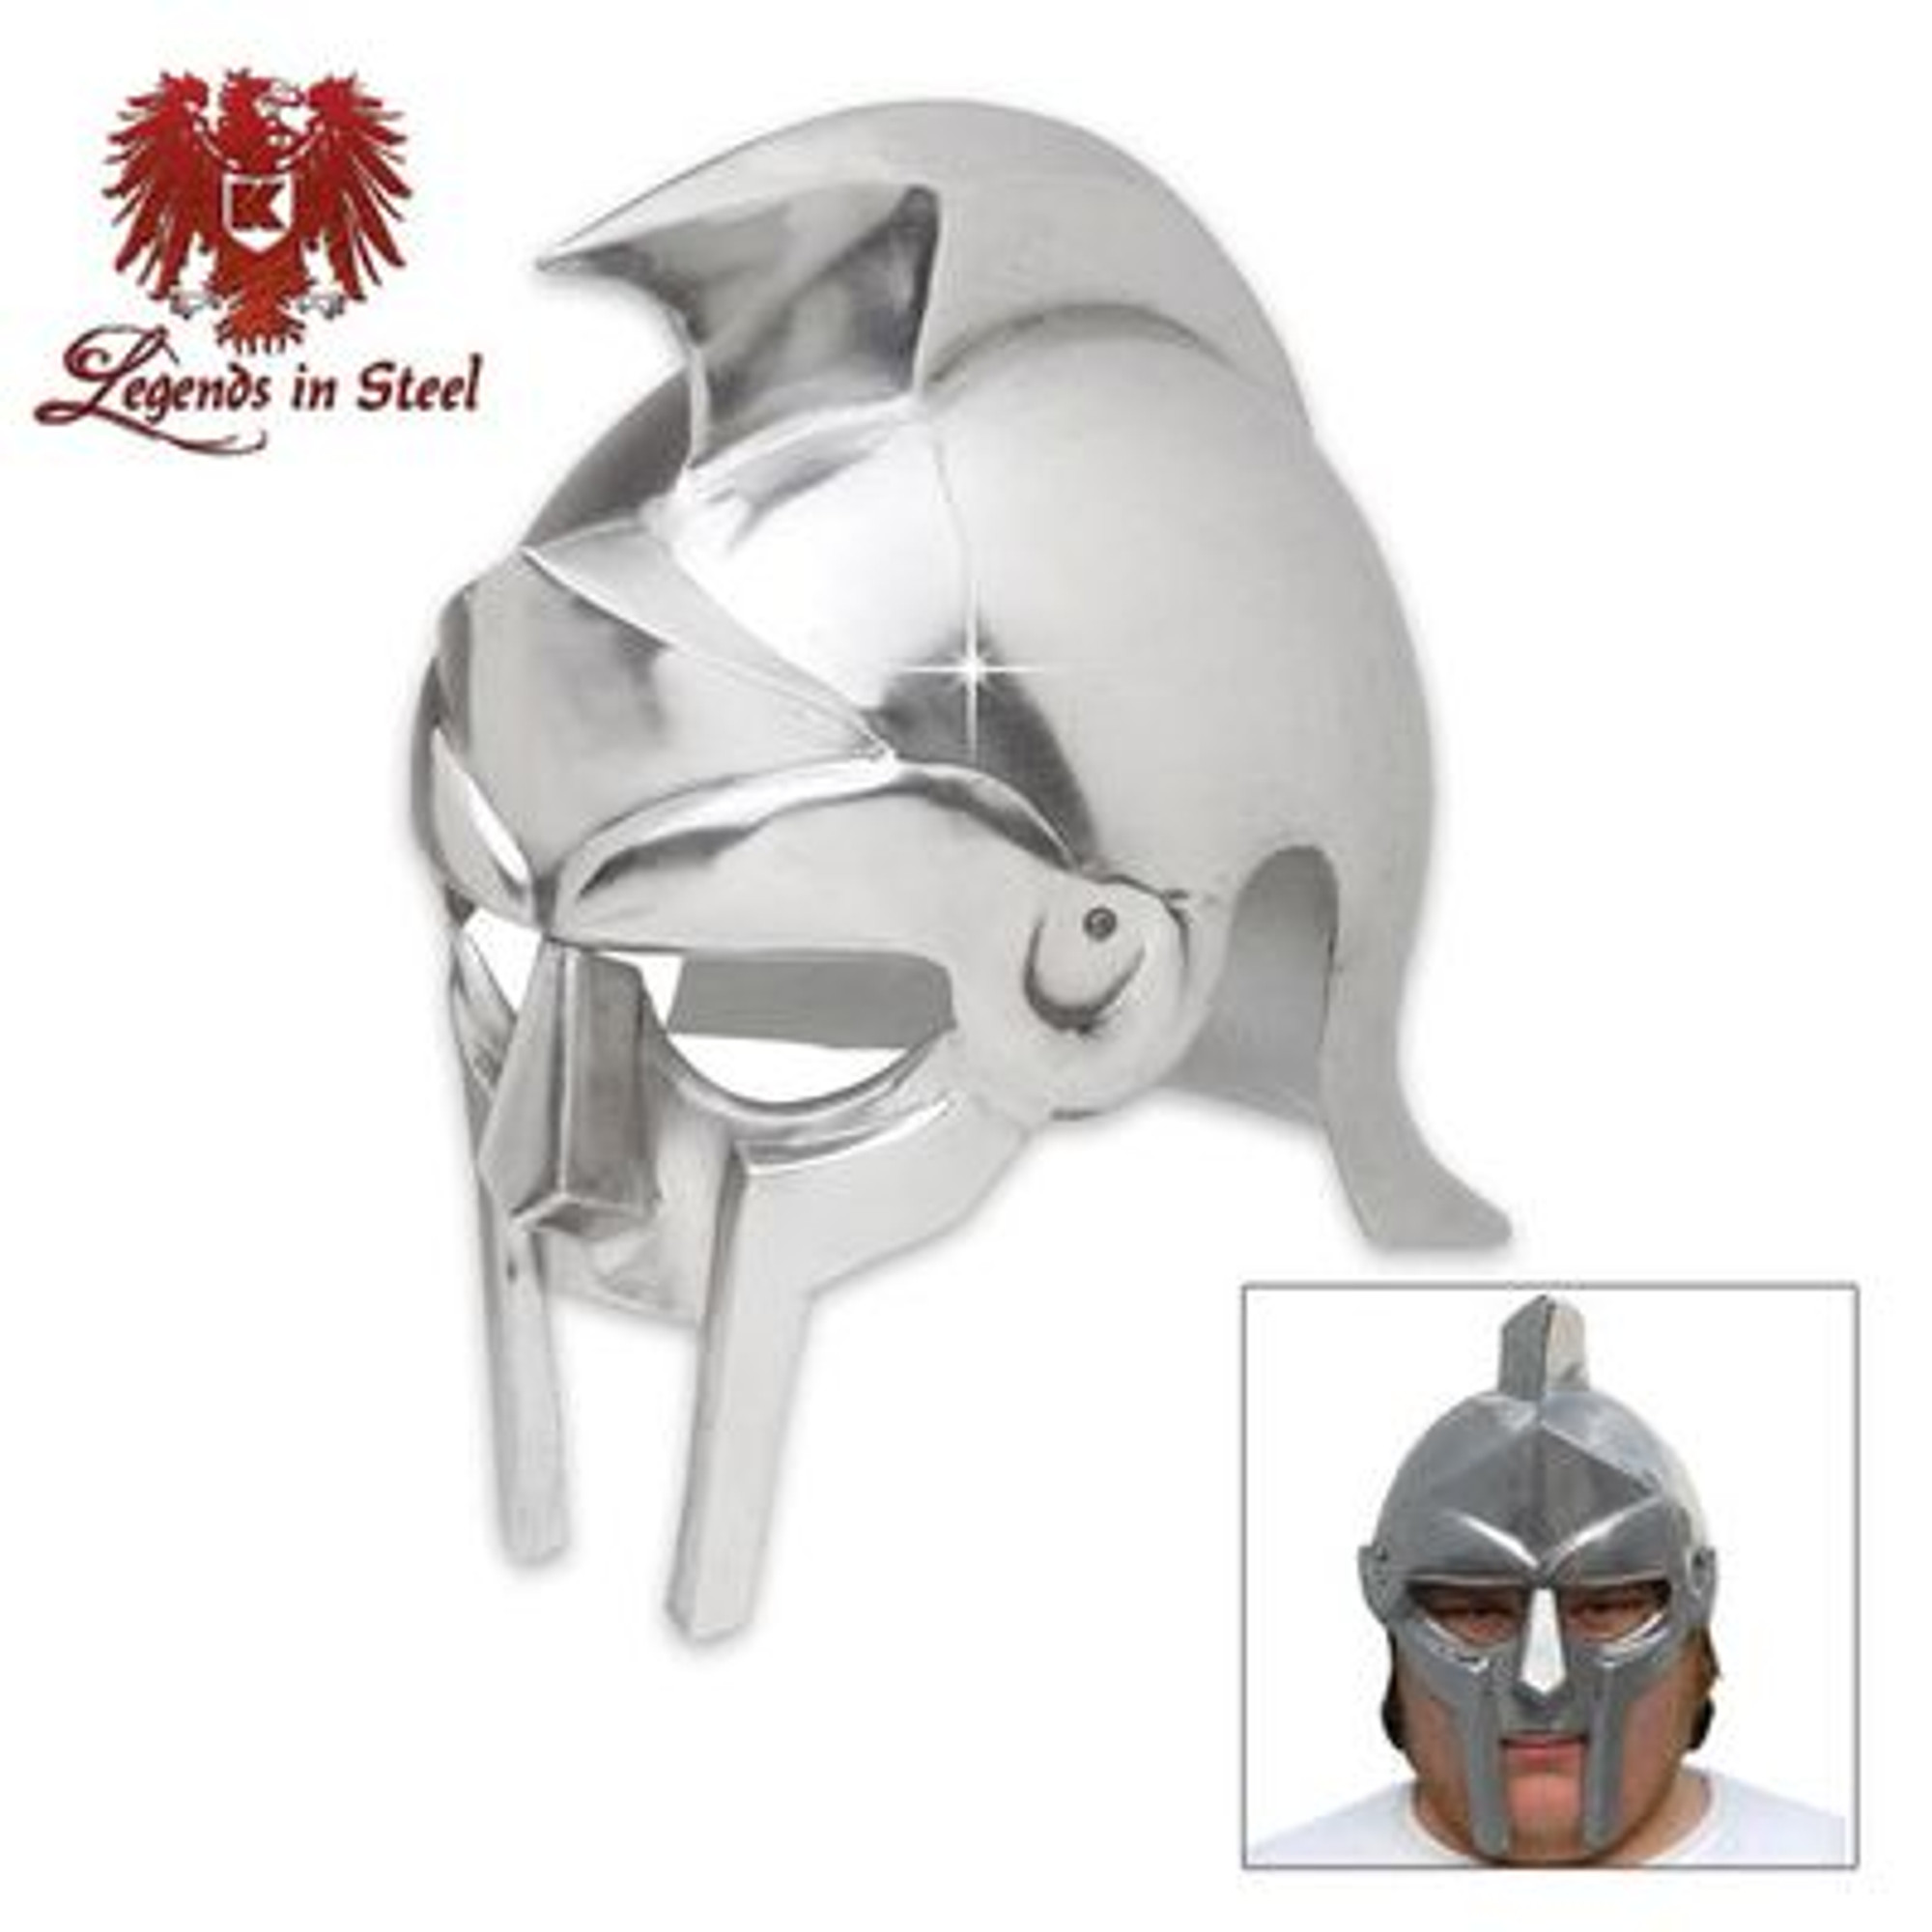 Legends in Steel Gladiator Warrior Steel Helmet